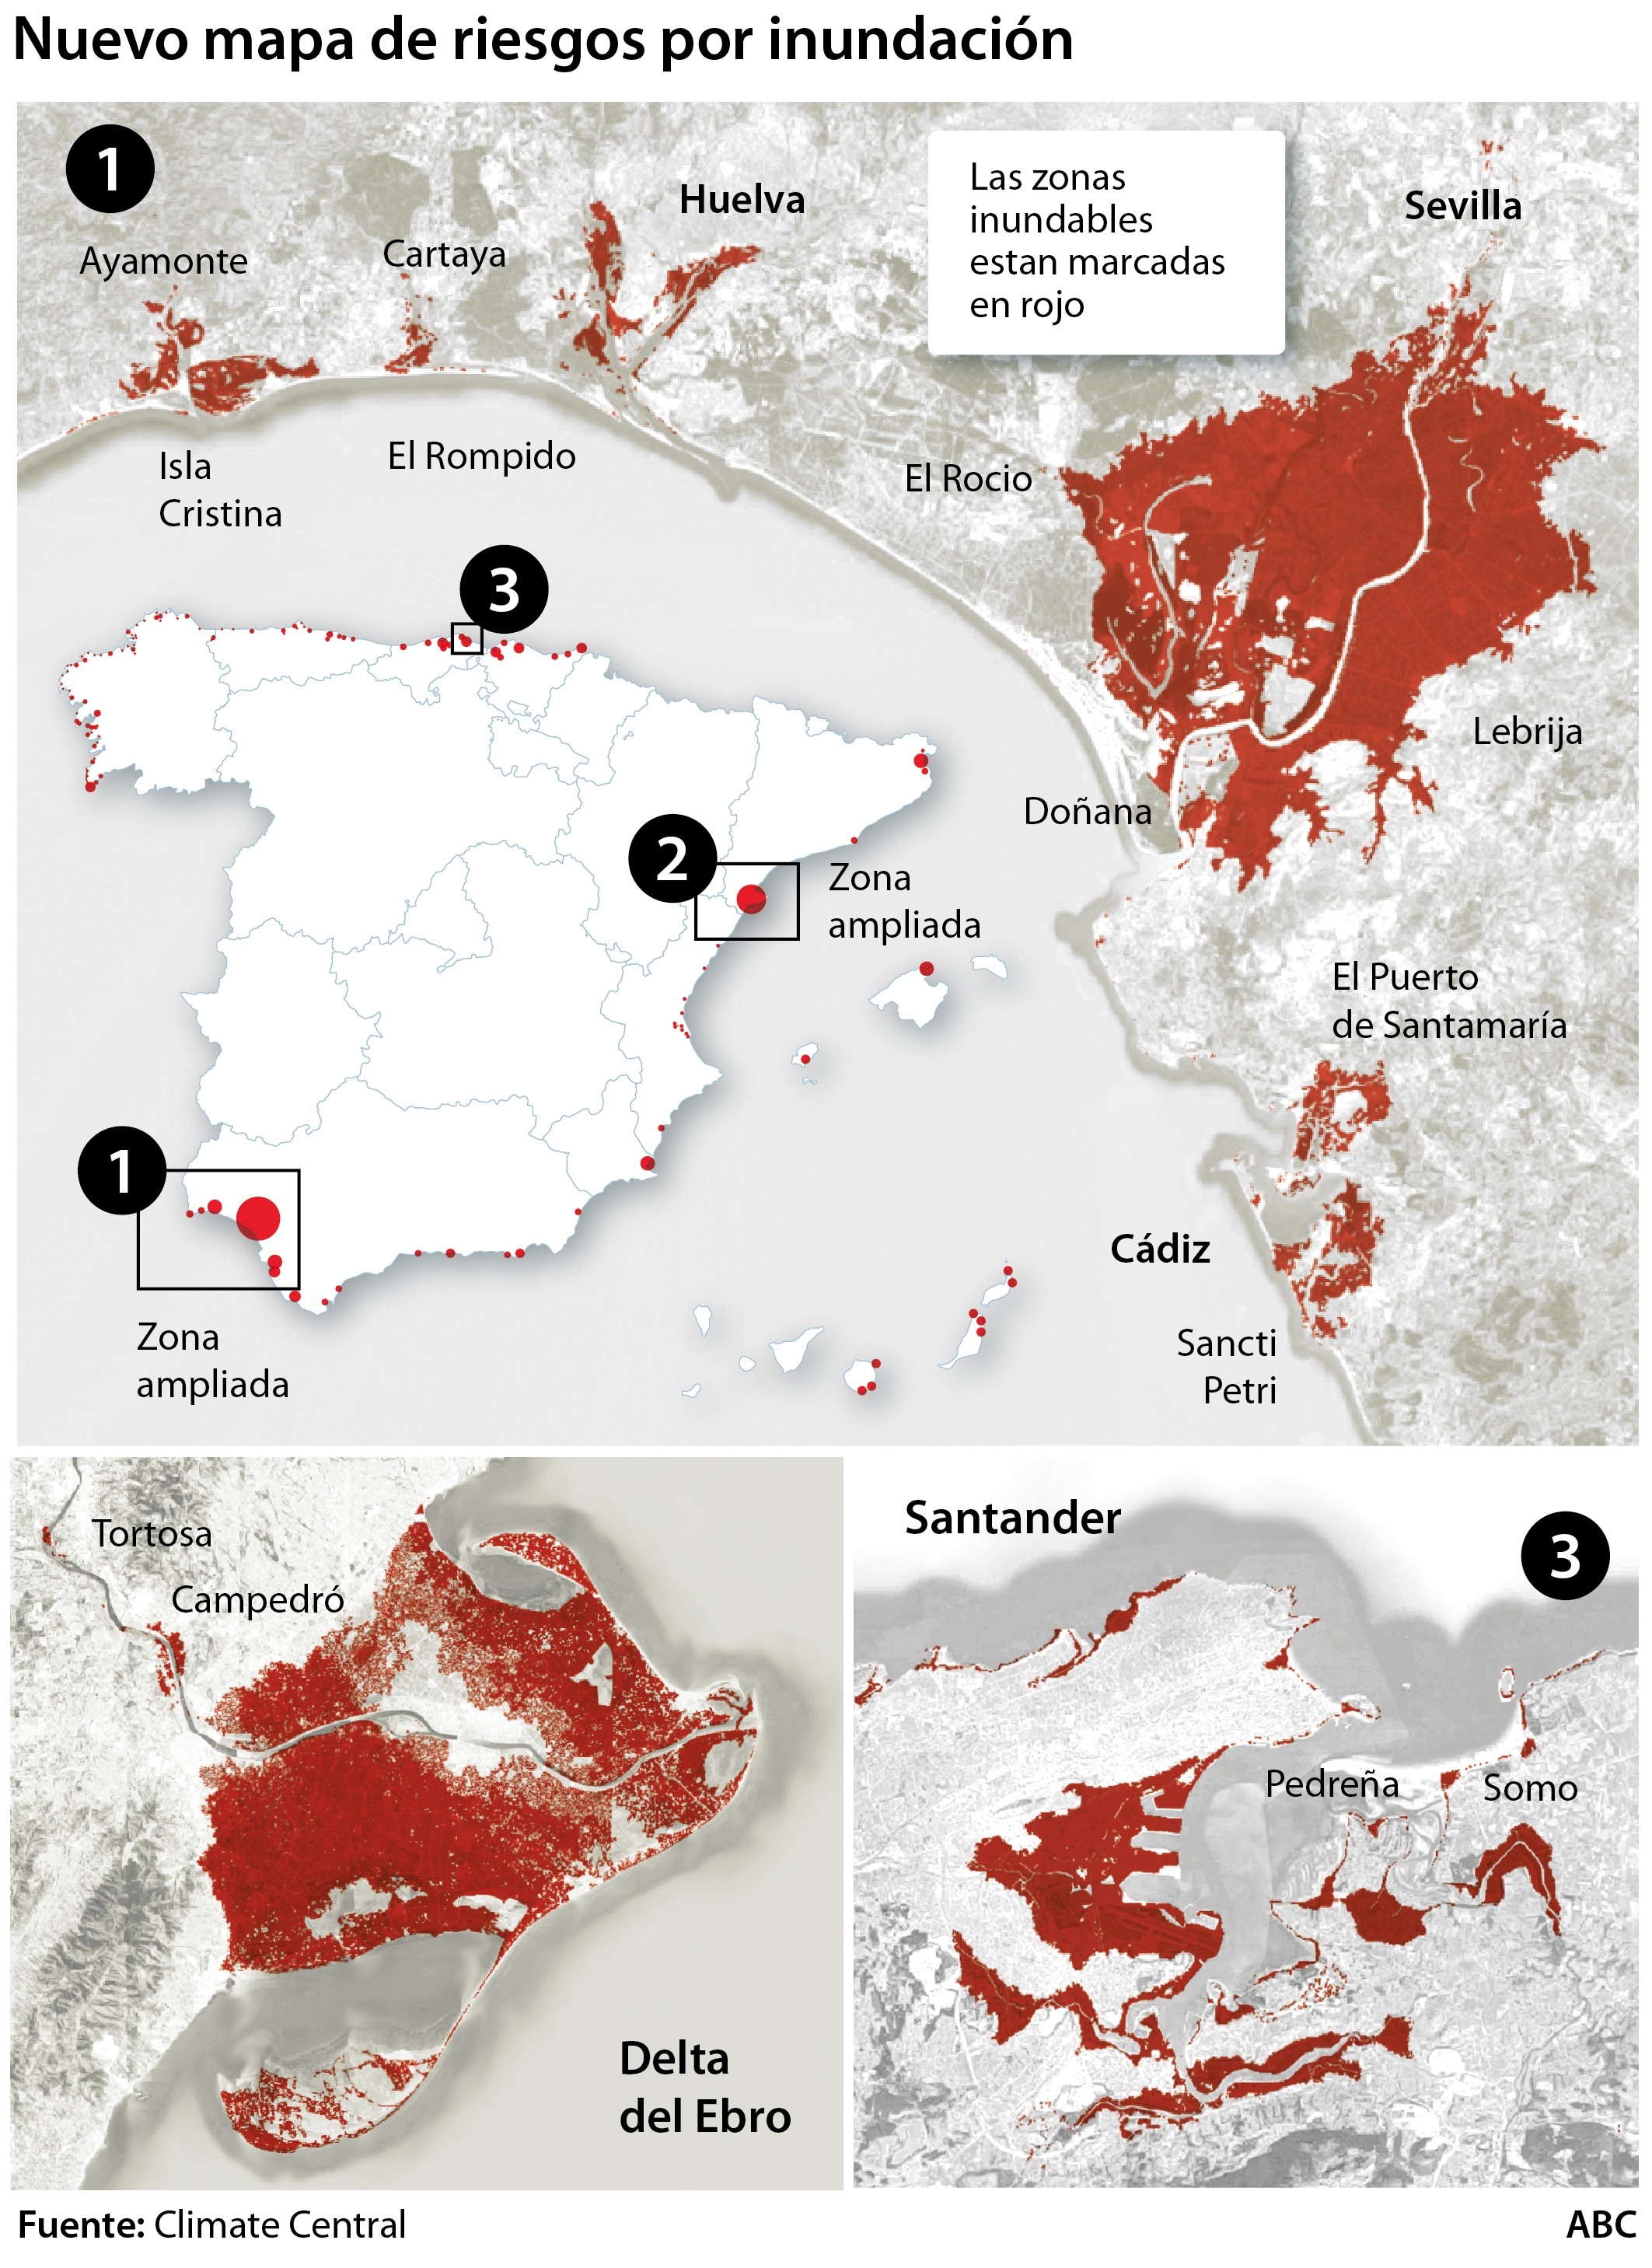 300 millones de personas viven en zonas inundables para 2050 y 210.000 están en España